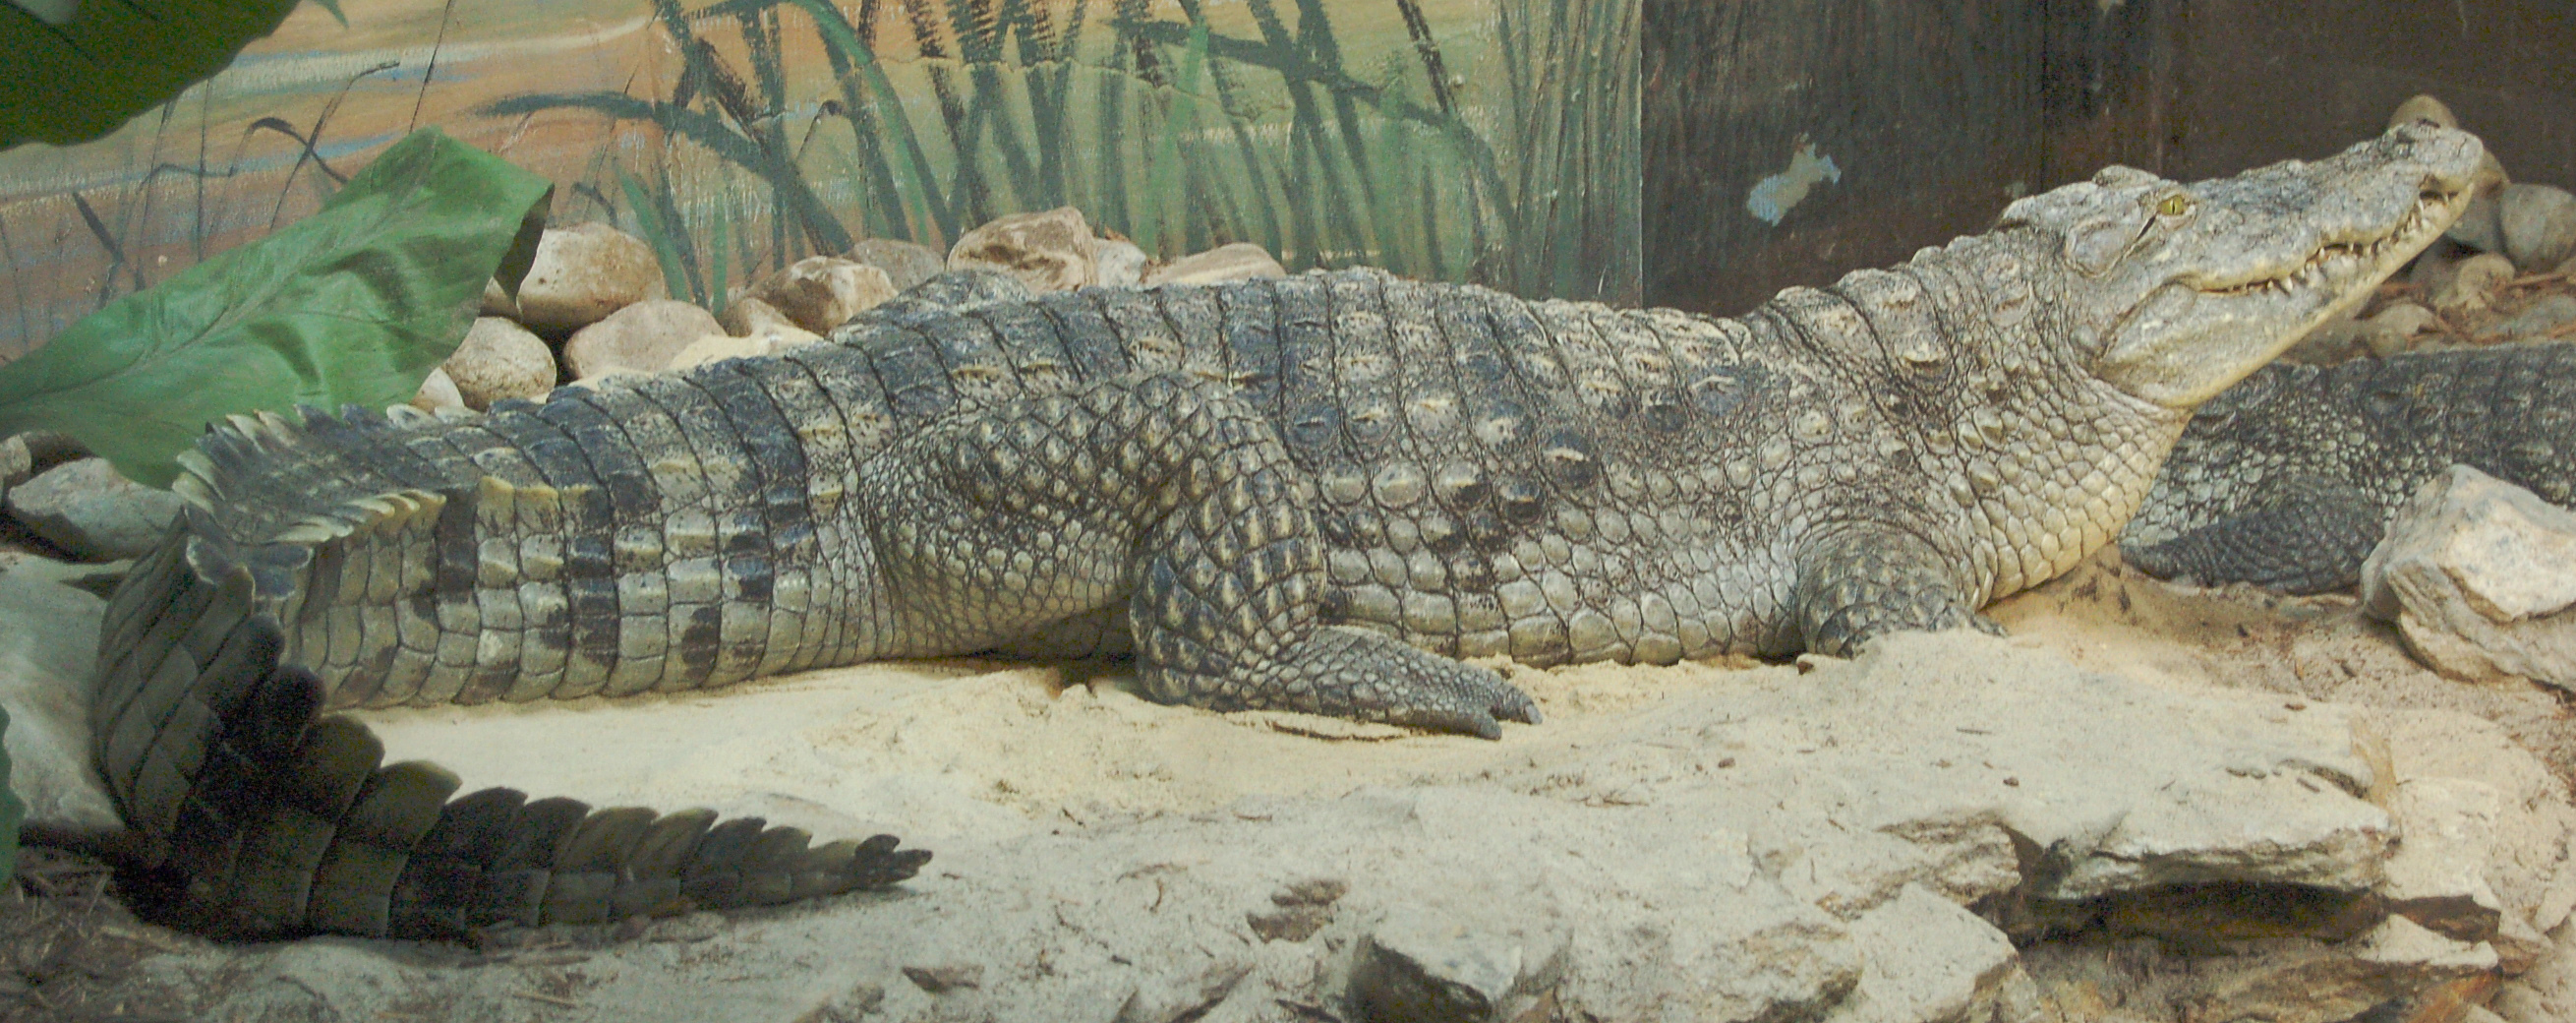 Alligator Side